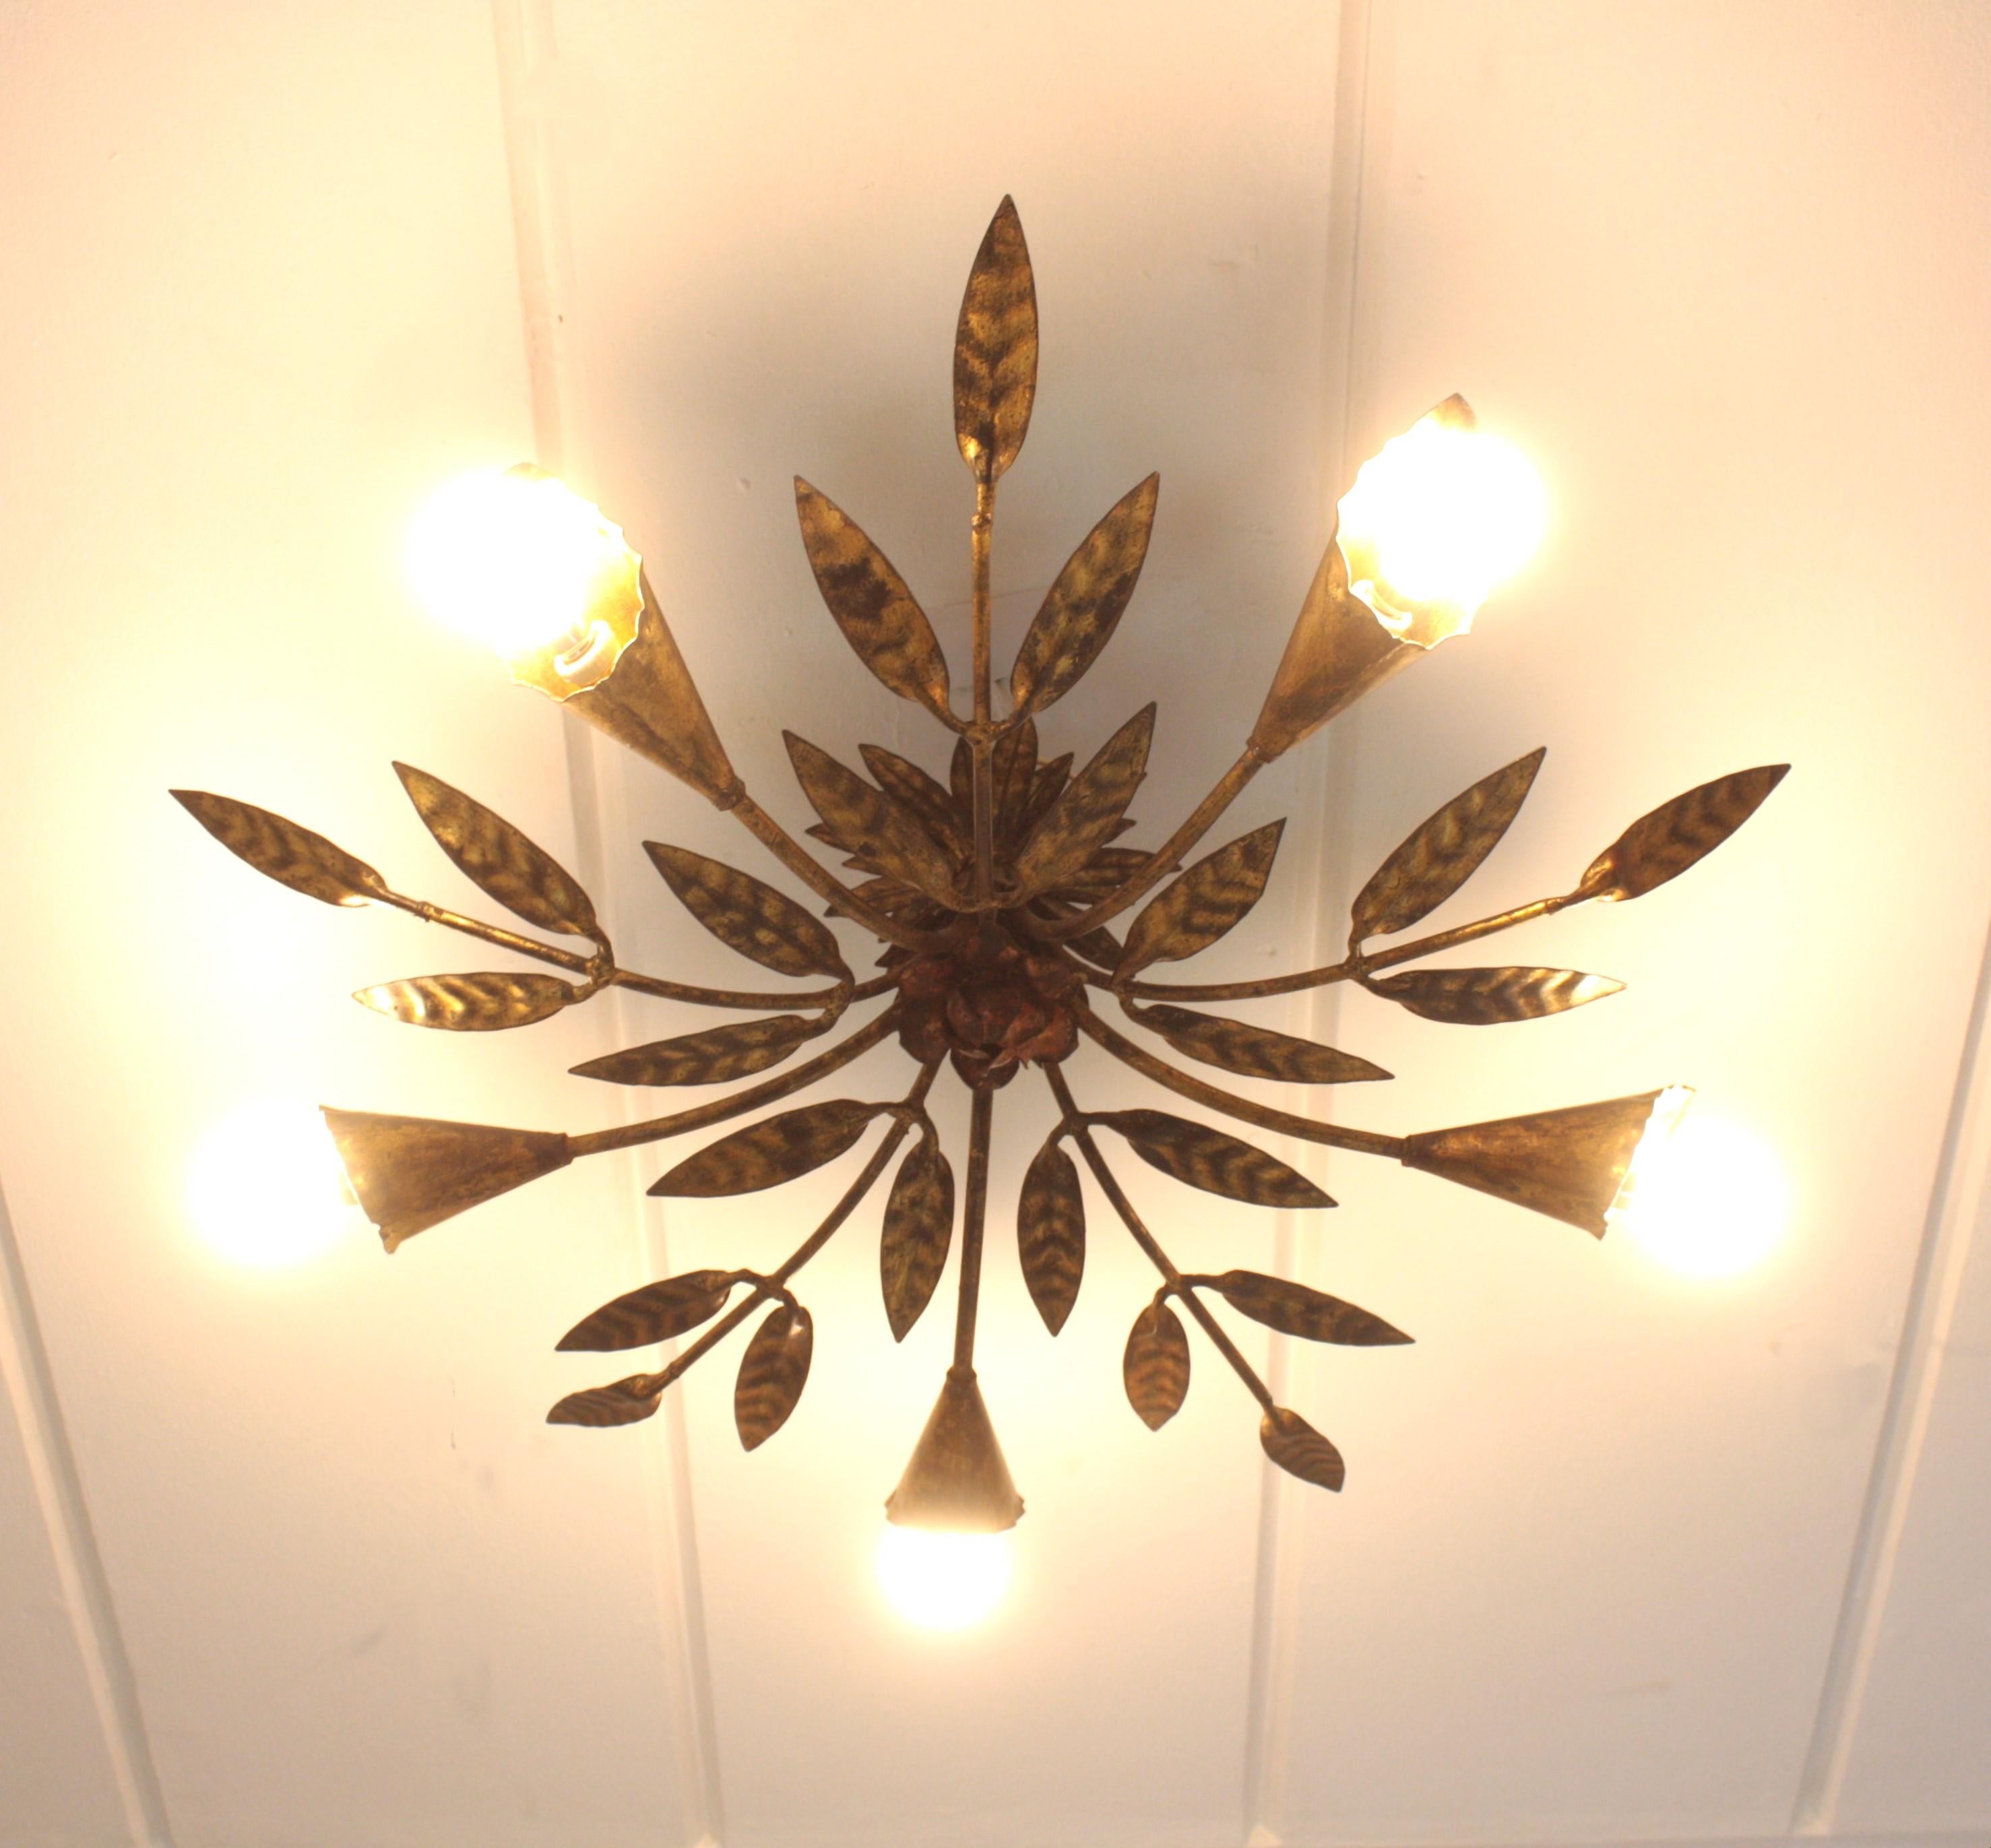 Hand-Crafted Spanish Starburst Sunburst Foliage Light Fixture / Chandelier in Gilt Iron